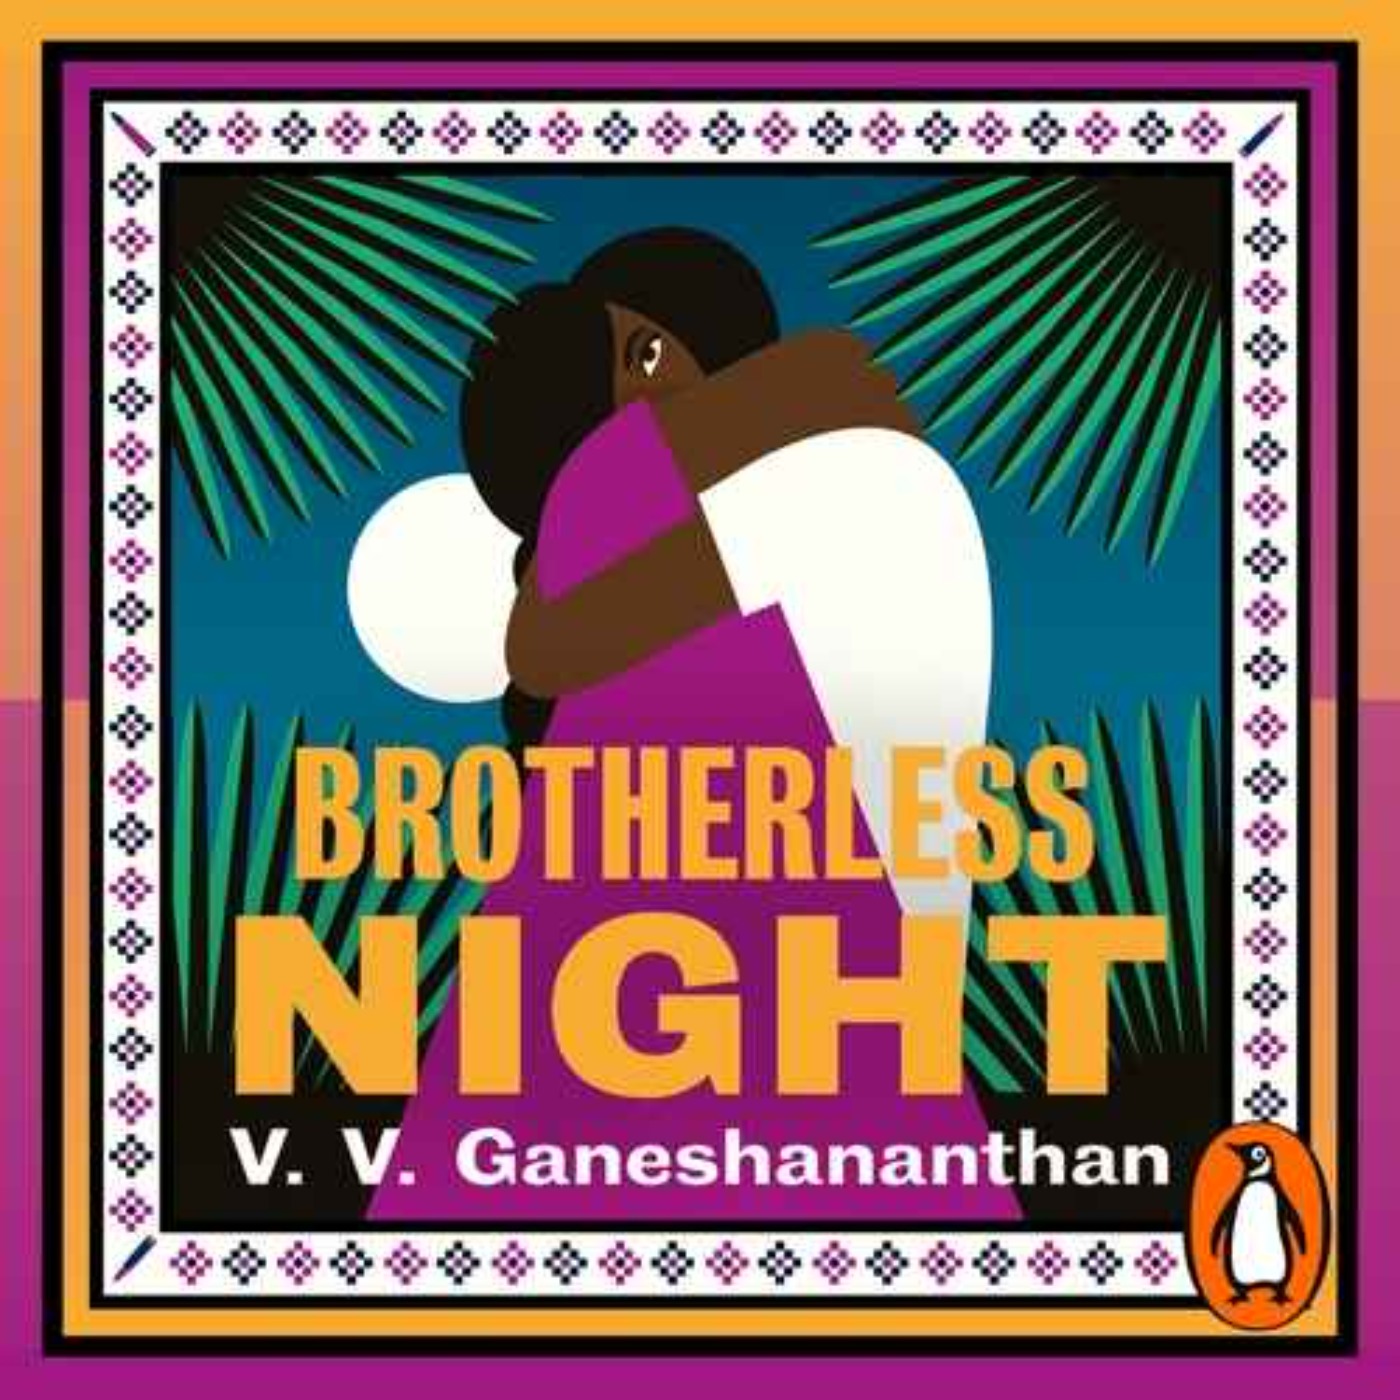 Little Atoms 846 - V. V. Ganeshananthan's Brotherless Night